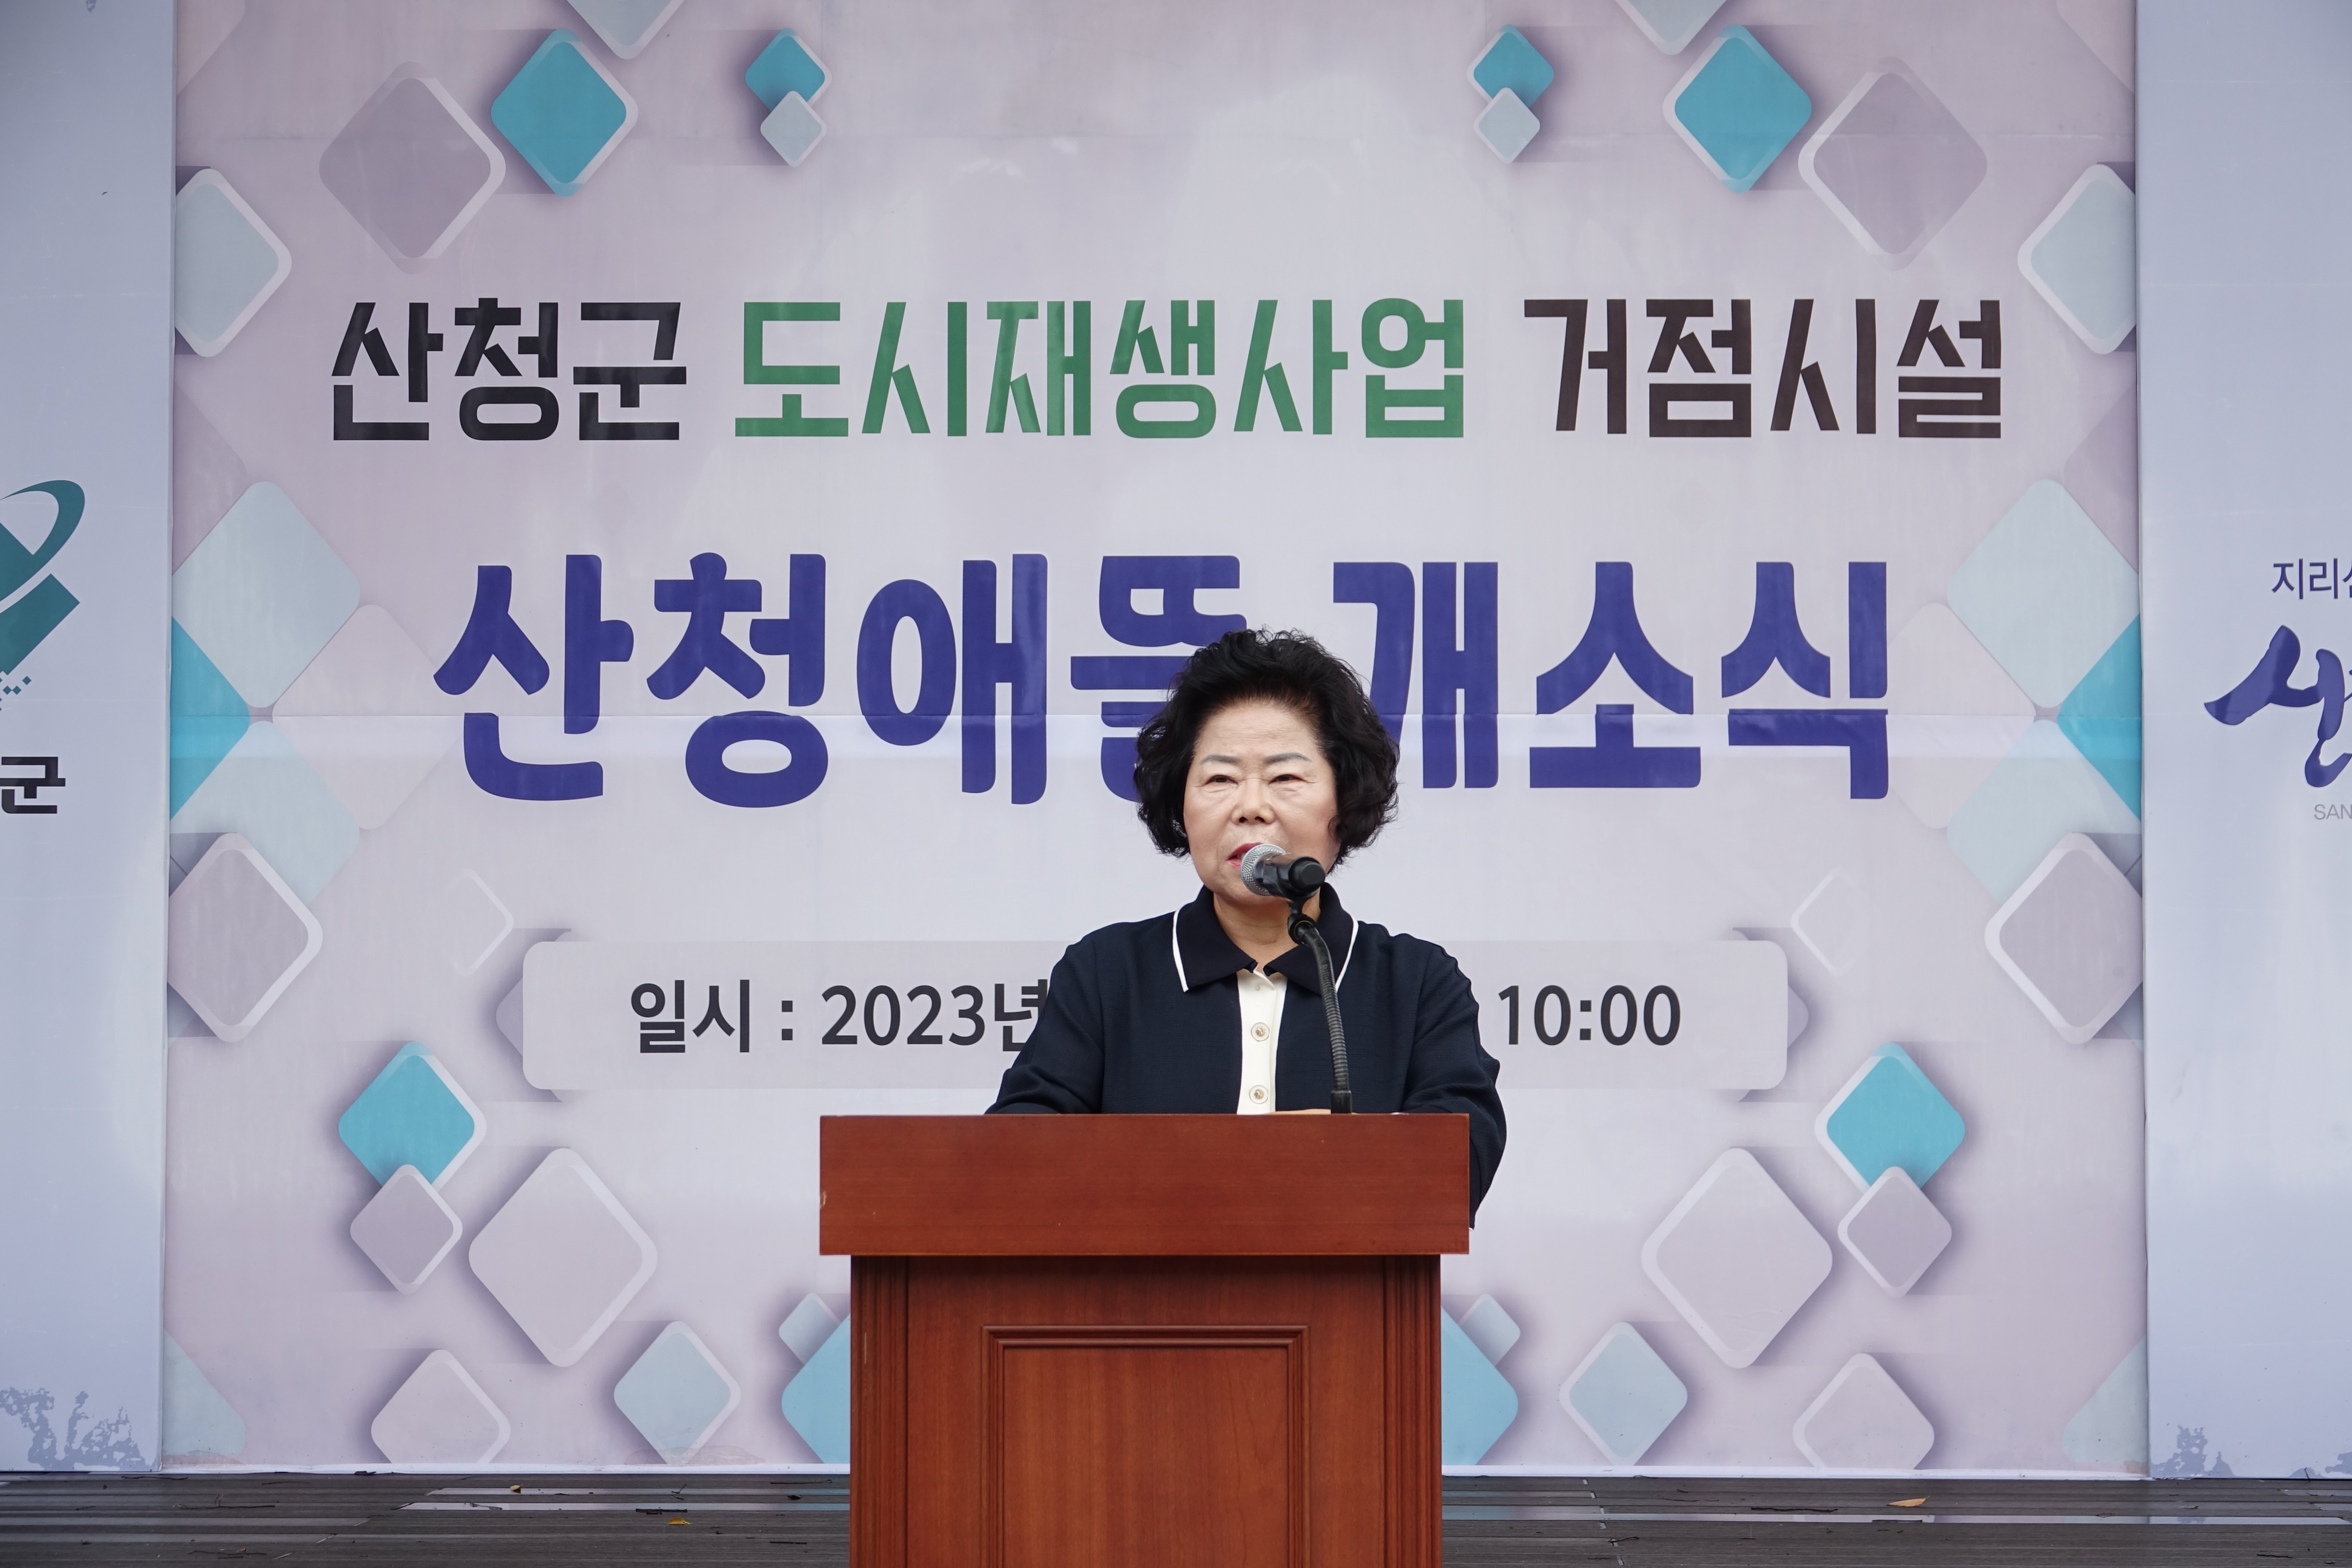 산청애뜰 개소식(산청군 도시재생사업 거점시설) 개최 2